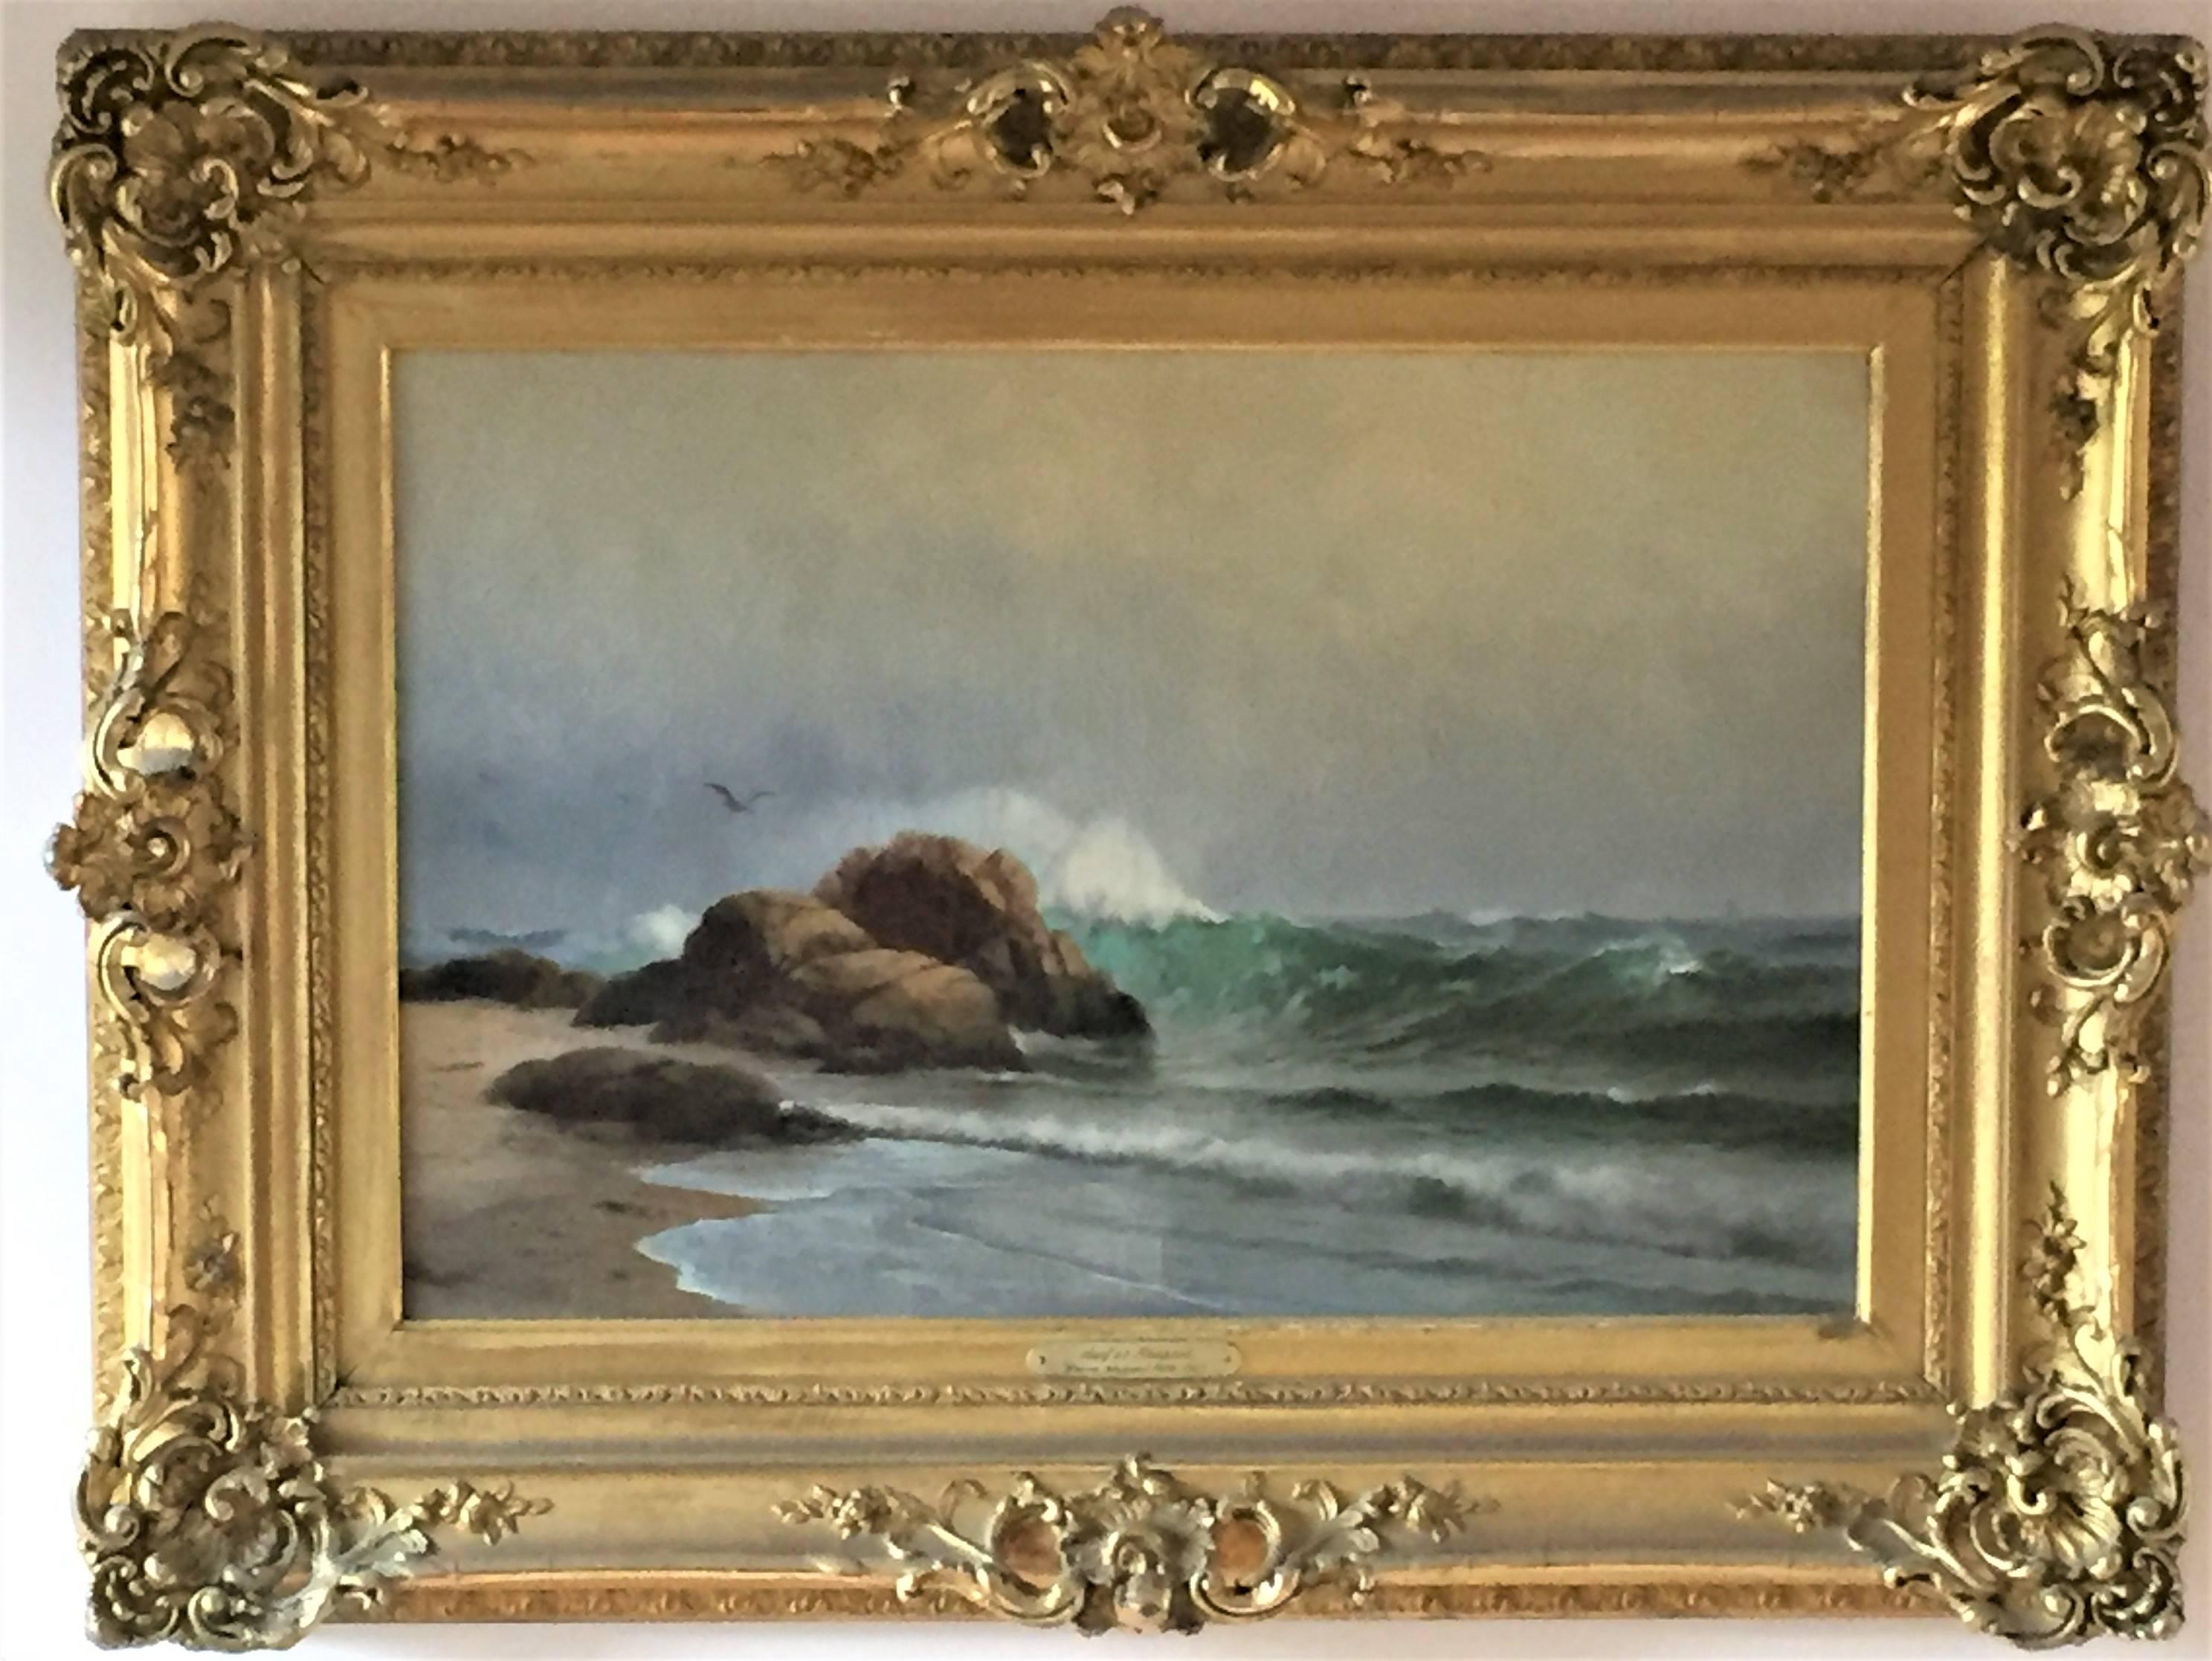 Le Surf à Newport (Rhode Island). Vers 1906. Huile sur toile. 43,18 x 60,96 cm (encadrée 66,04 x 86,36 cm). Doublé ; craquelures importantes ; sinon en bon état. Logé dans un exceptionnel cadre à la feuille d'or de style Louis XV (néo-rococo). Signé